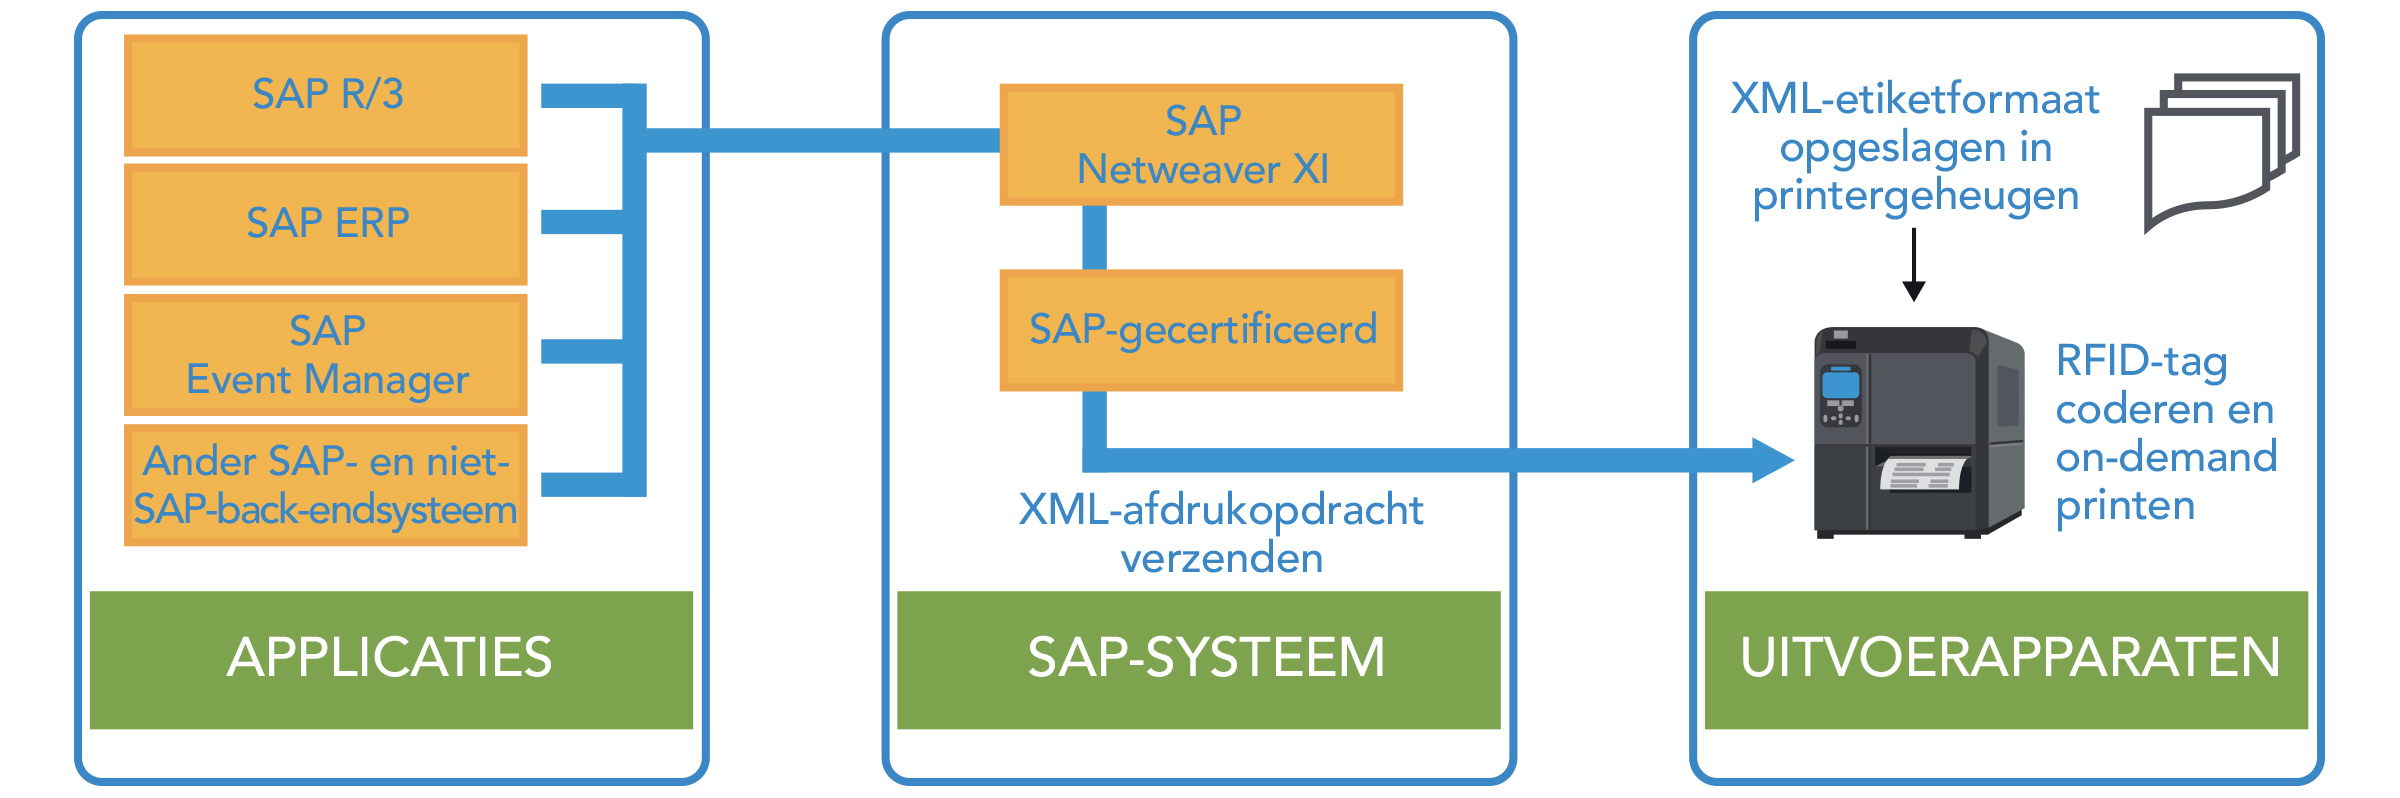 Applicaties > SAP-systeem > Uitvoerapparaten